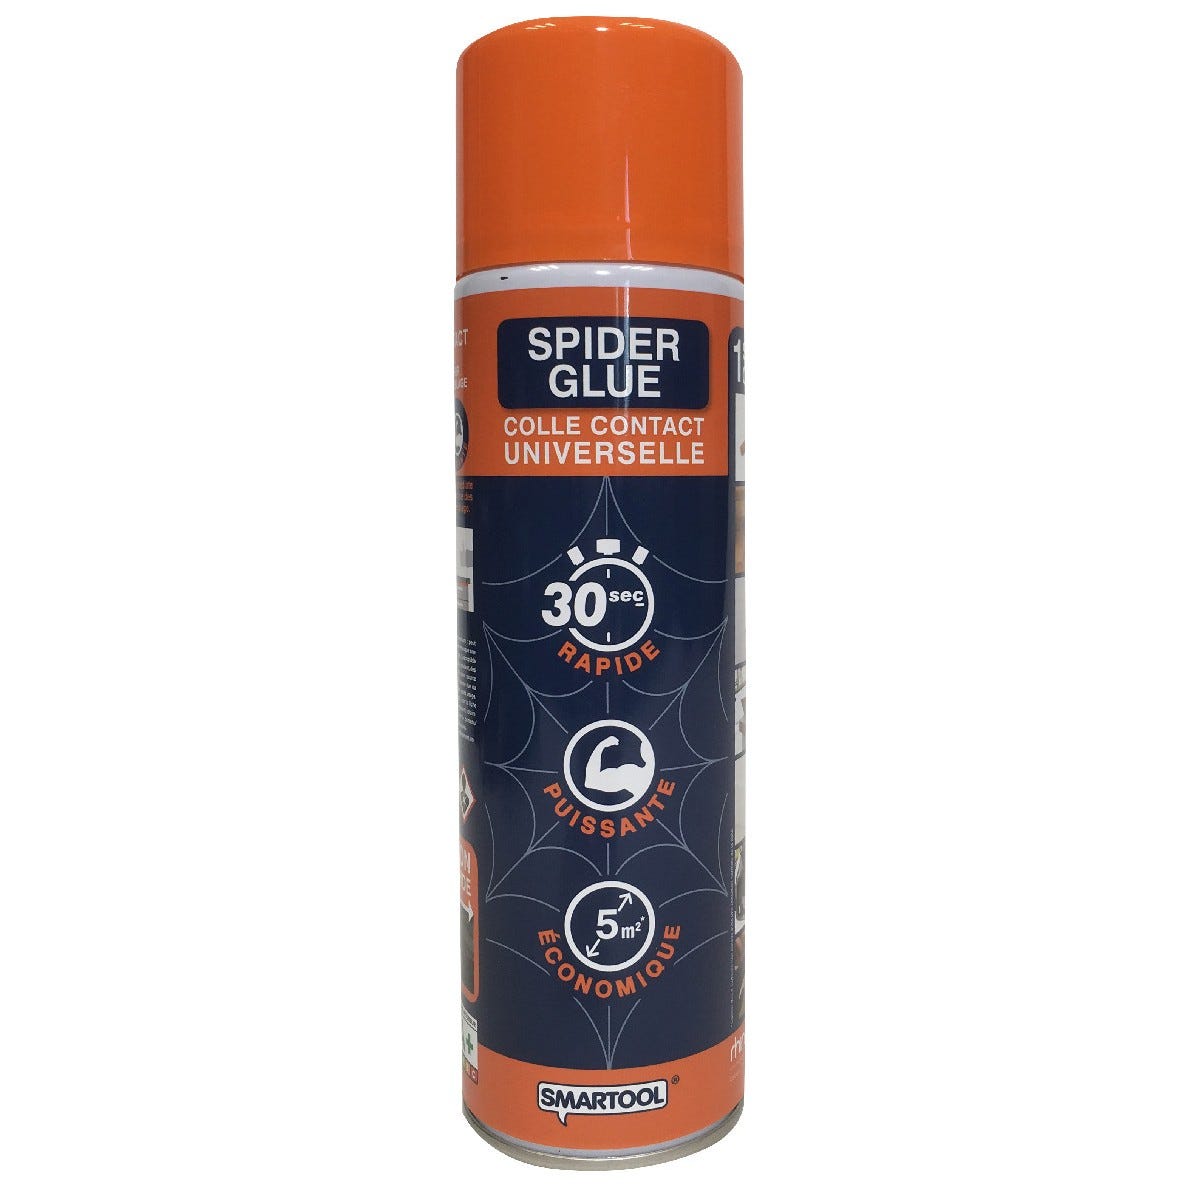 Colla universale Spray Spider Glue 200ml SMARTOOL Polimerizzazione 30 sec.